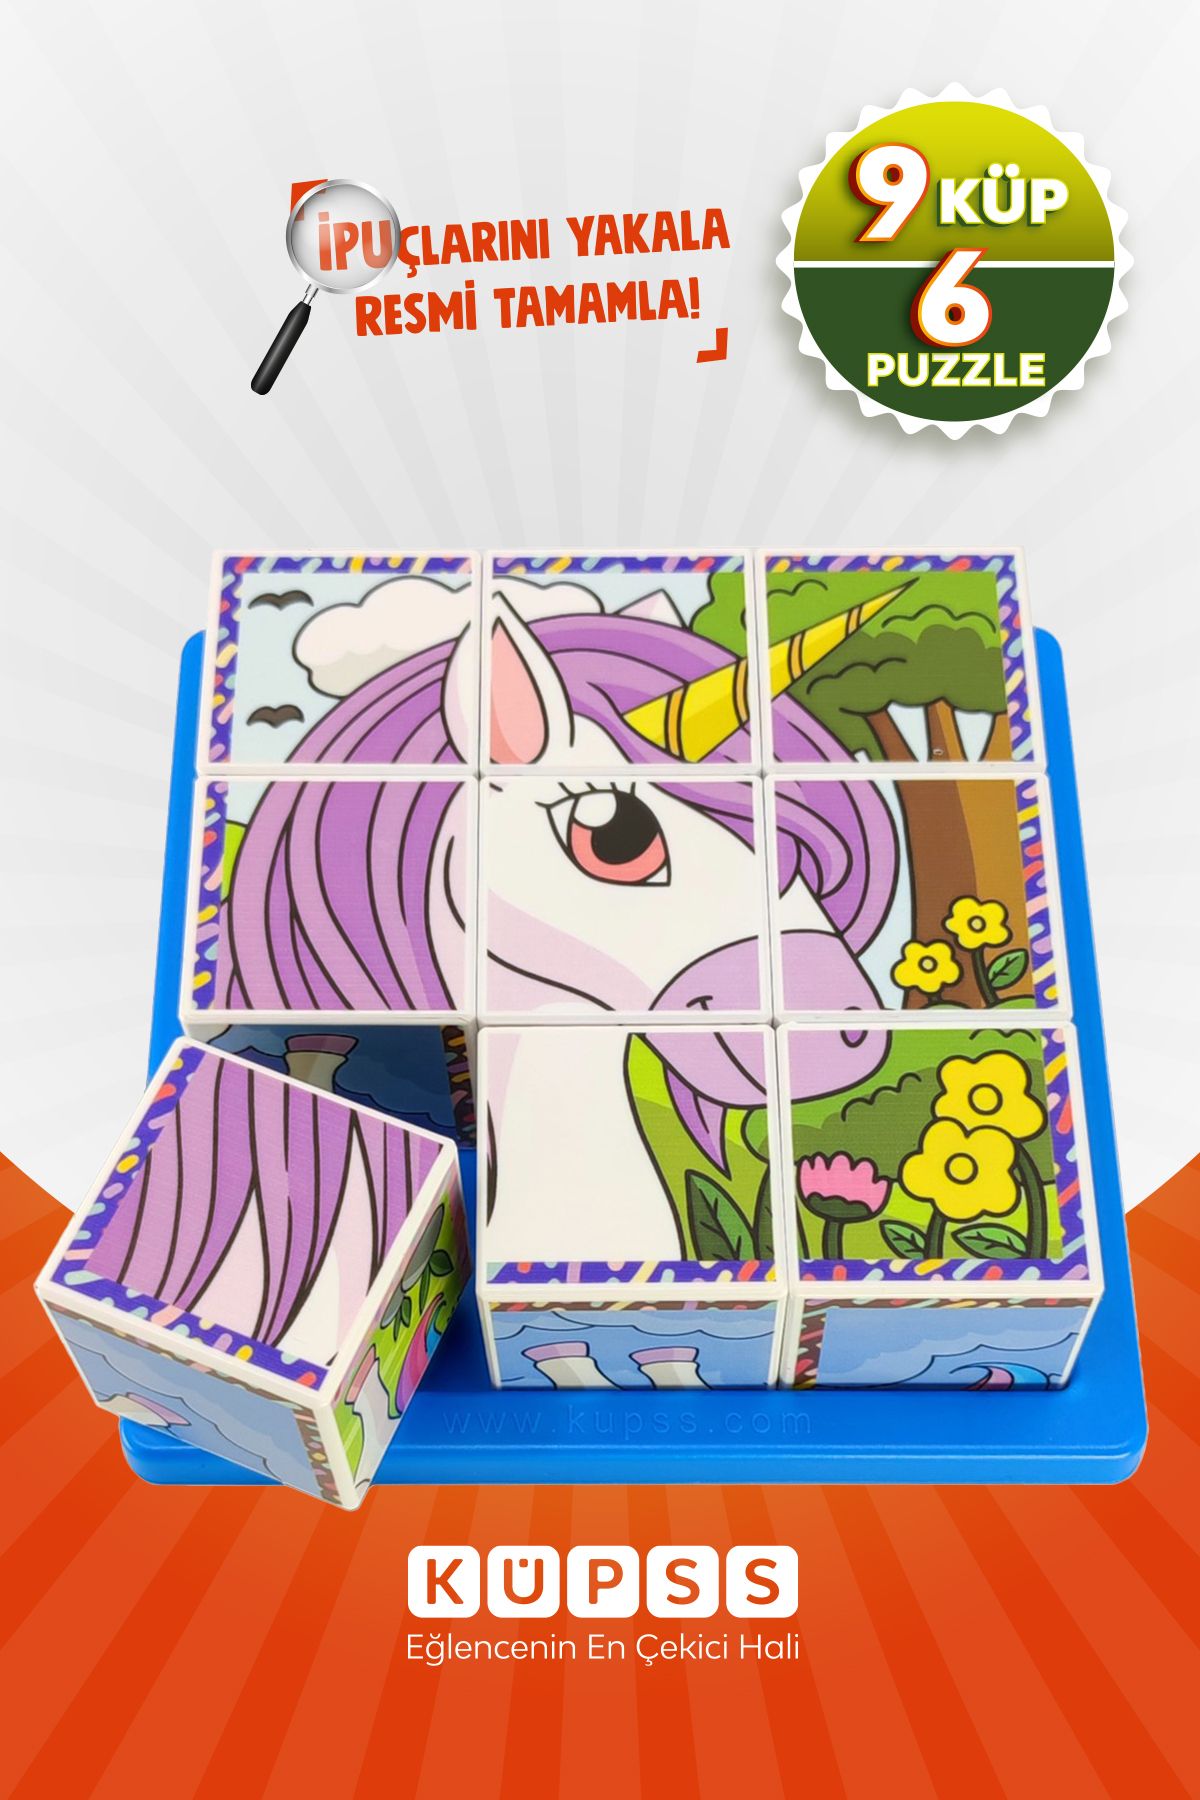 KÜPSS 6 Farklı Yapboz Unicorn 3d Küp Puzzle Rubik Küp 9 Küp 3 4 5 6 Yaş Eğitici Oyuncak Zeka Geliştirici